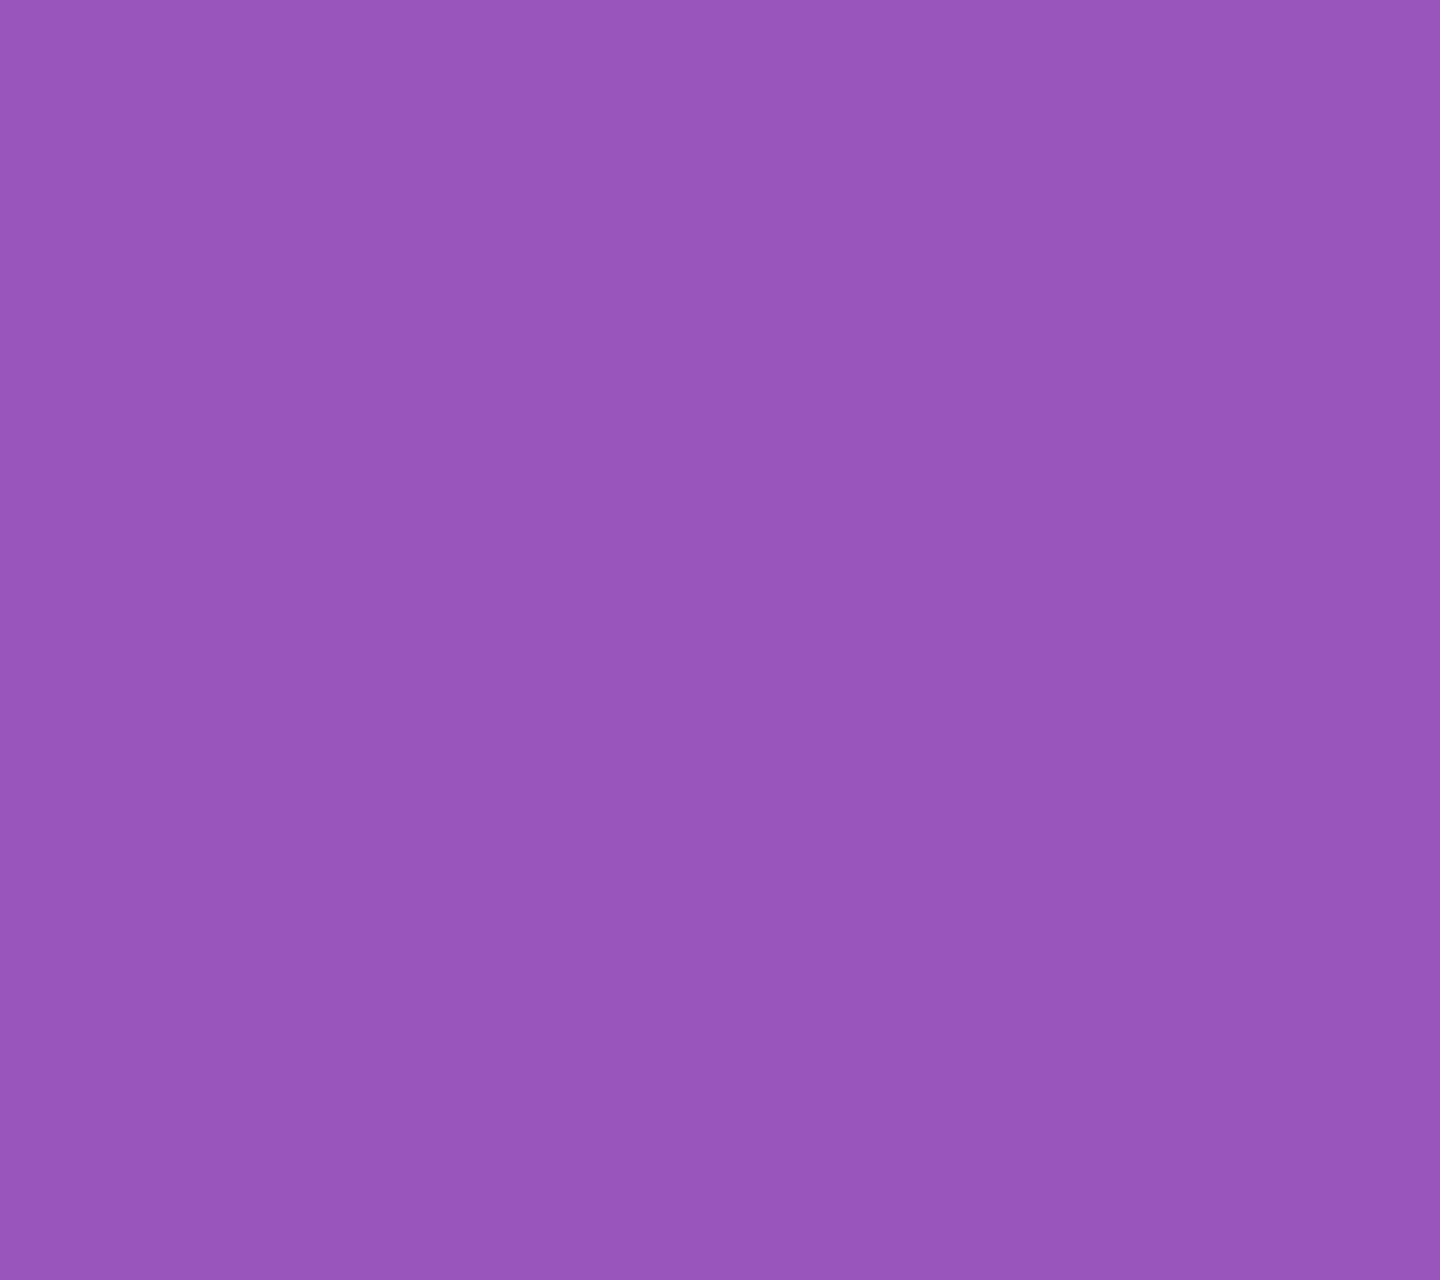 フラットな紫 Androidスマホ用壁紙 Wallpaperbox